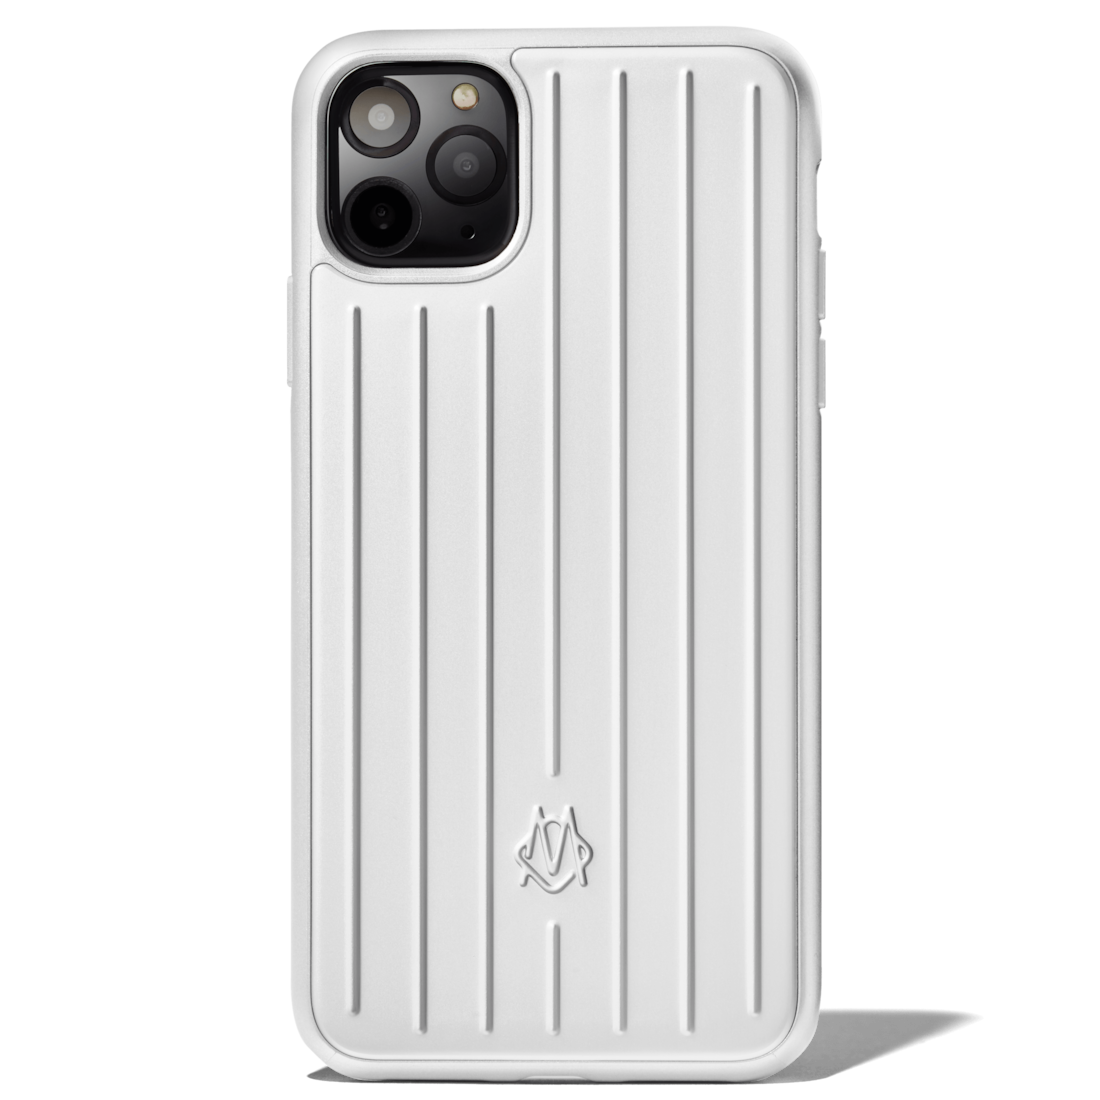 Aluminium iPhone 11 Pro Max Case 